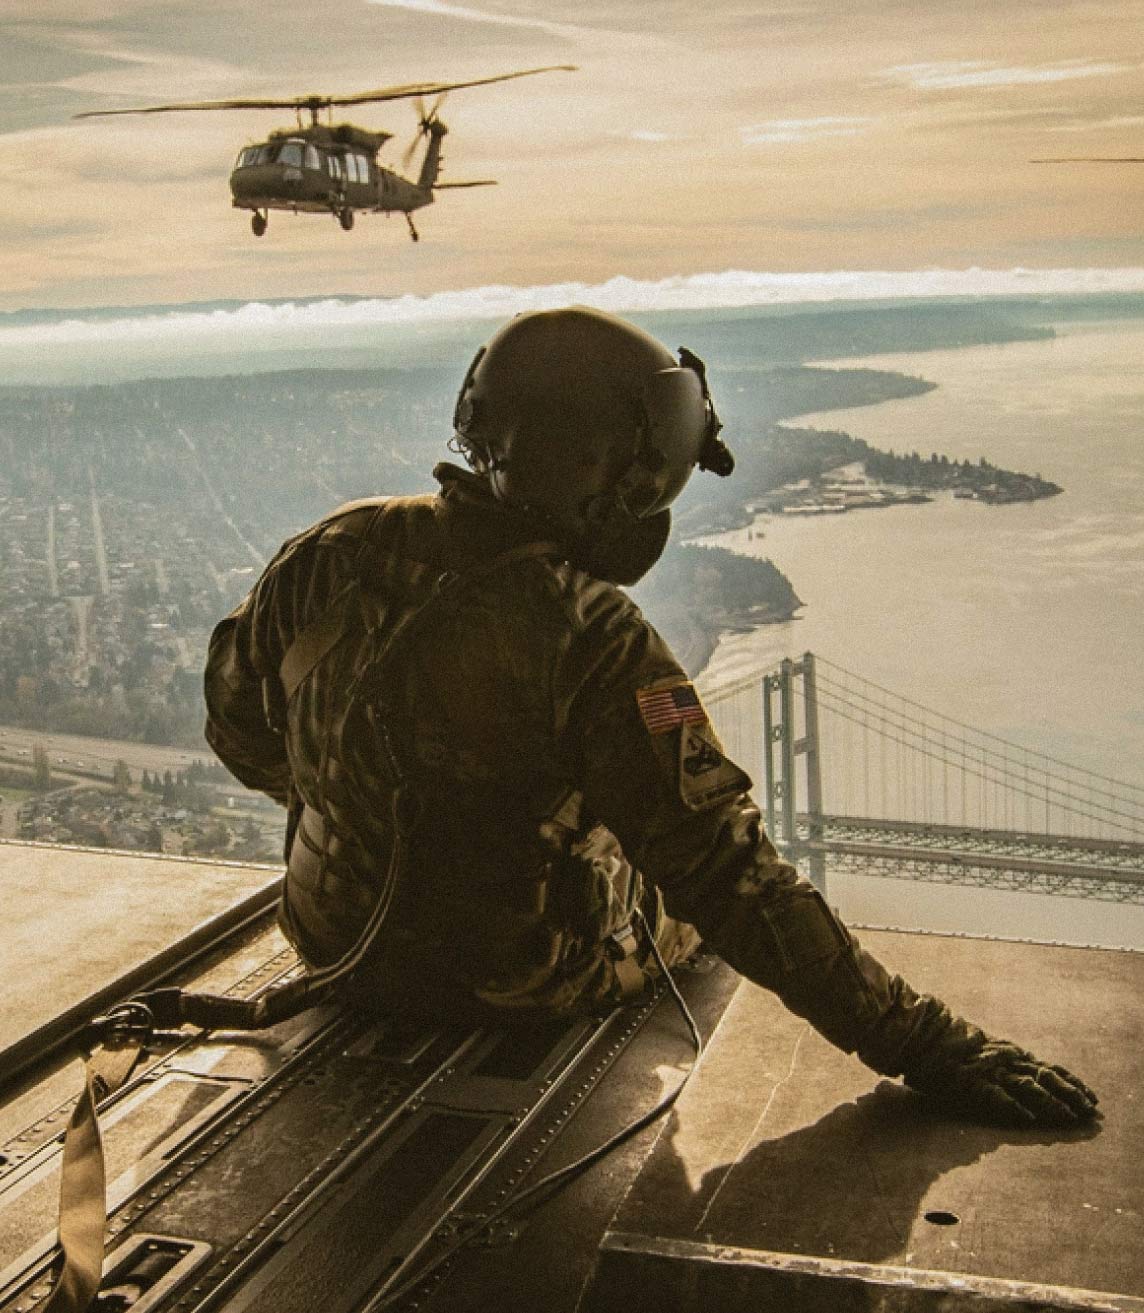 Un paracaidista sentado a bordo de un helicóptero en vuelo y a lo lejos dos helicópteros volando